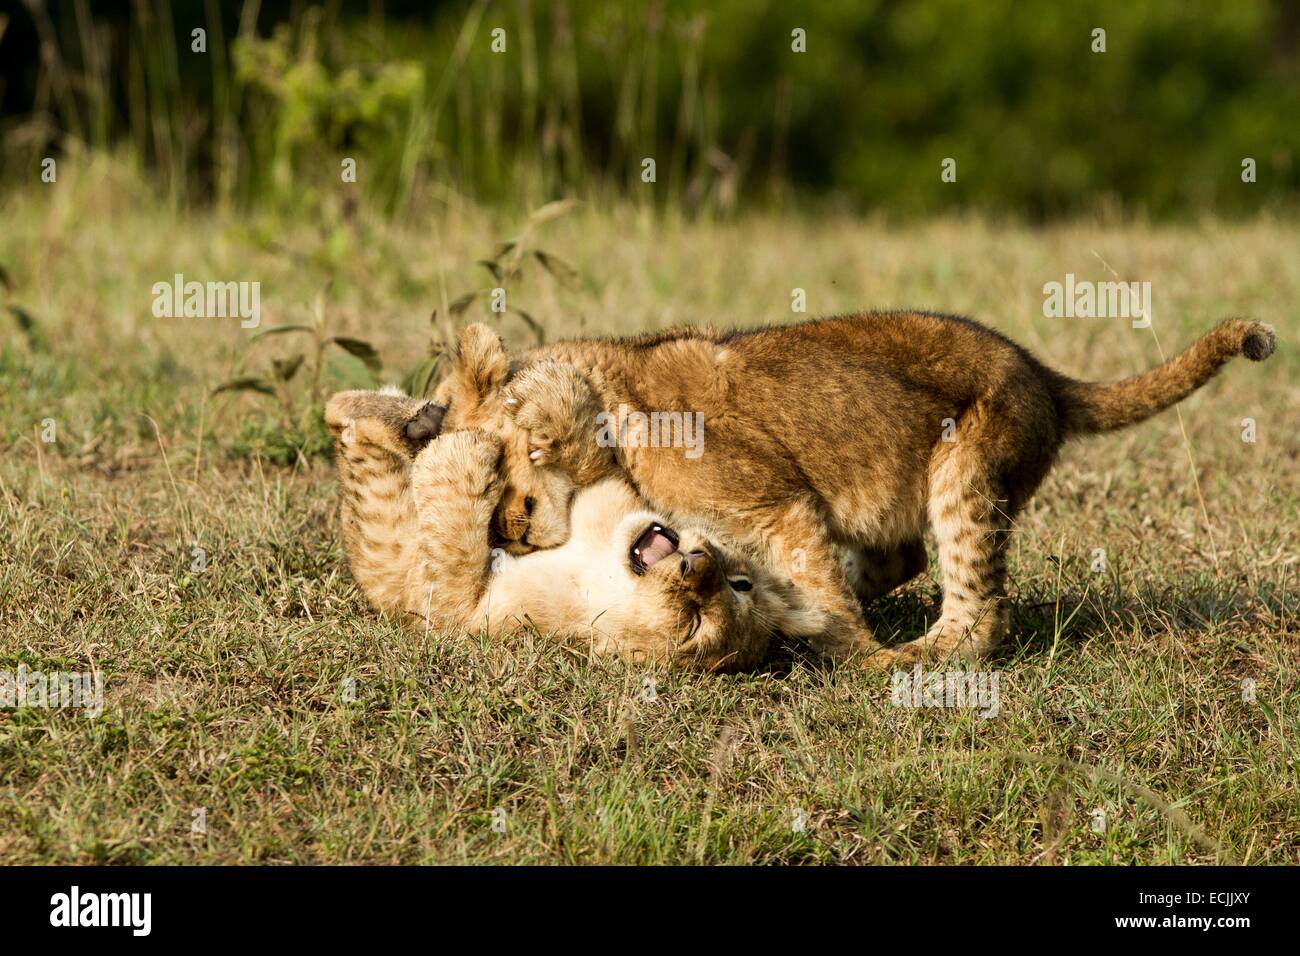 Kenya, Masai-Mara reserva de caza, el león (Panthera leo), Cachorros jugando Foto de stock